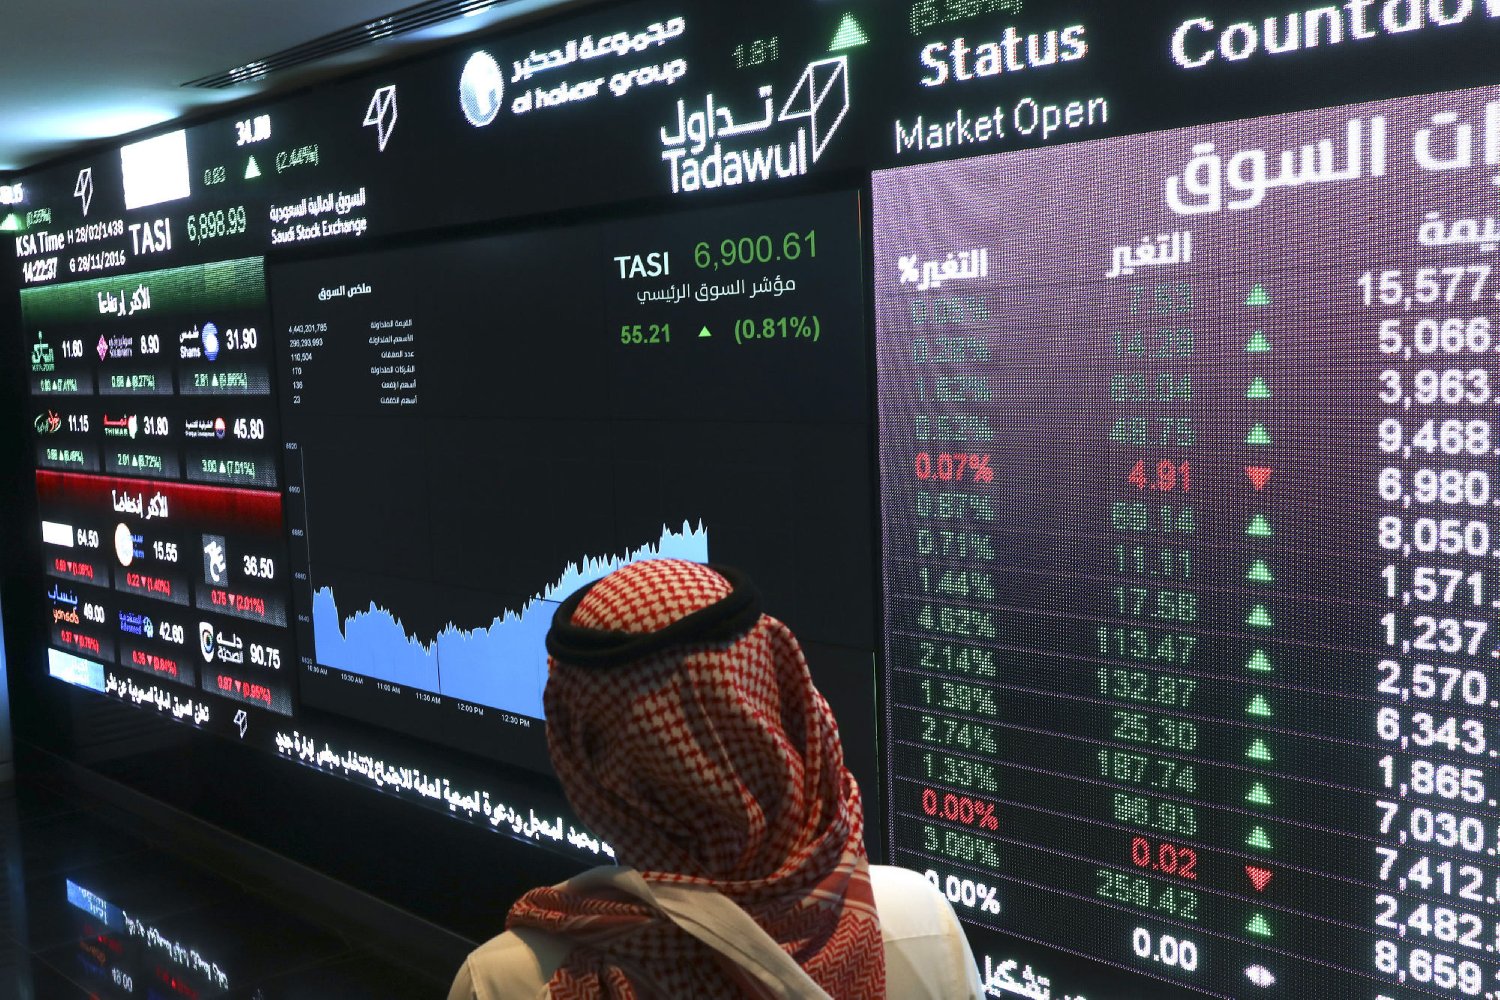 بلومبرغ: سوق الأسهم السعودية تقدم حوافز لإدراج شركات التكنولوجيا الناشئة - اقتصاد الشرق مع بلومبرغ